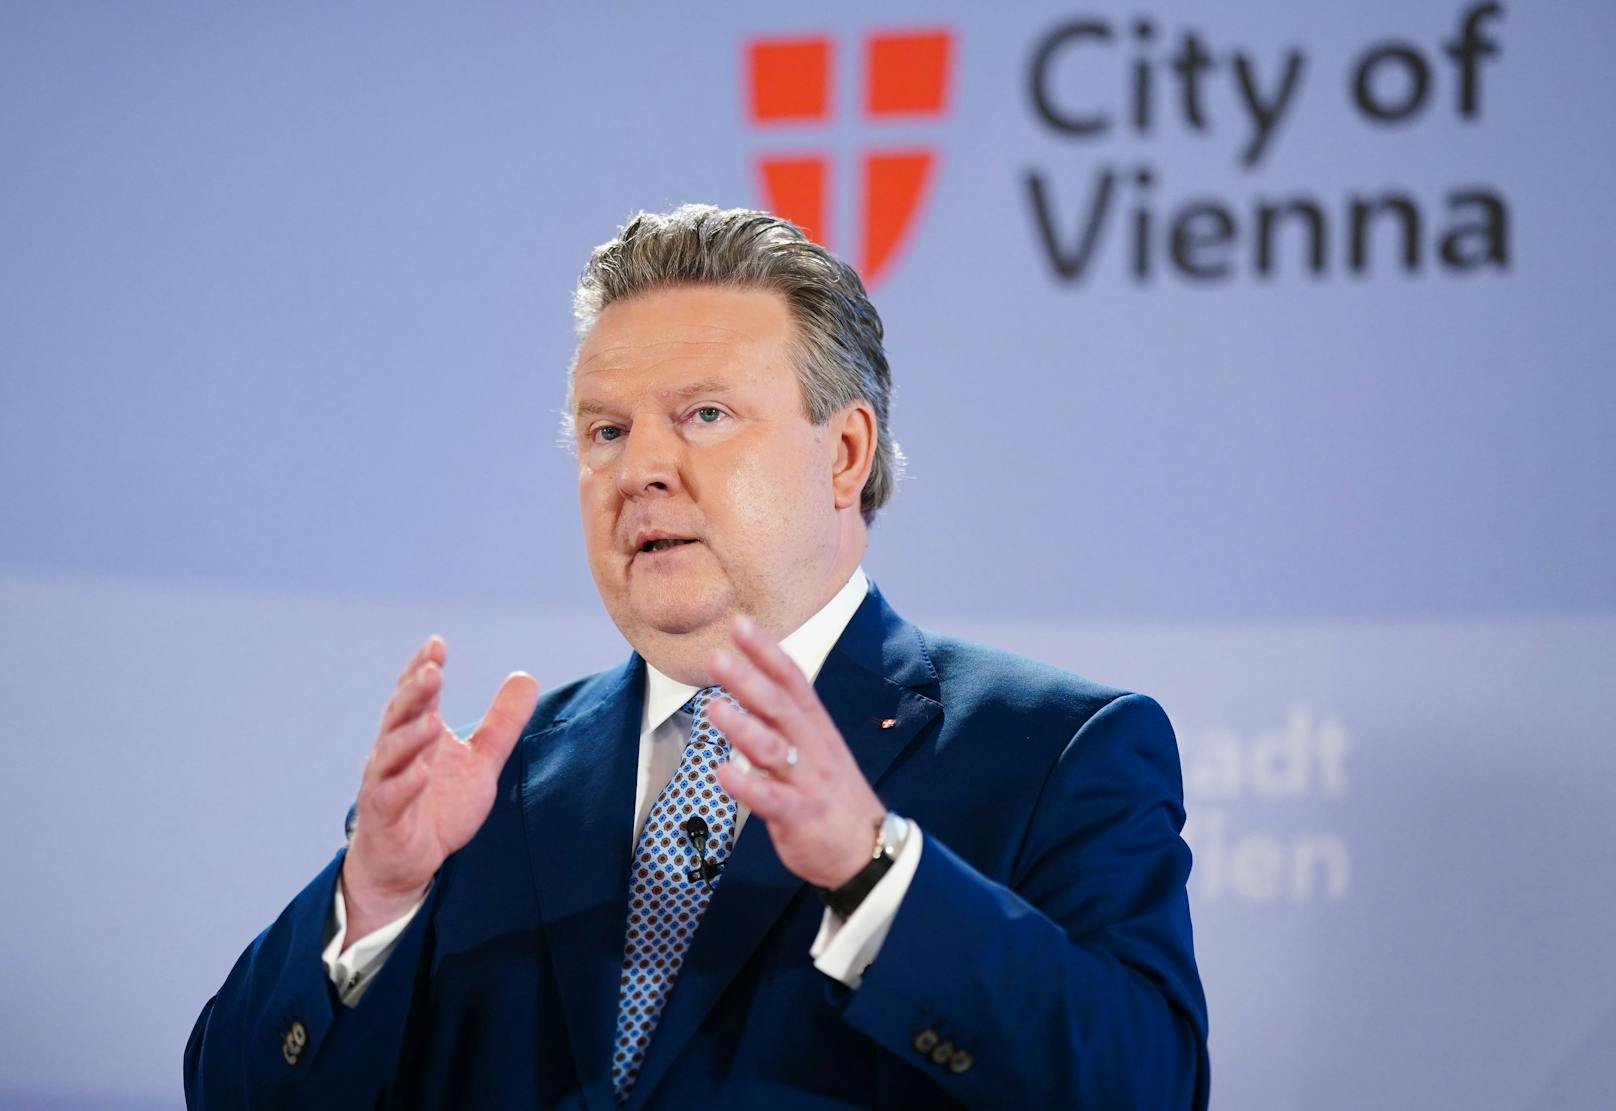 Die Causa Wien Energie sorgt für hitzige Debatten im Rathaus. Nun meldete sich der Stadtchef zu Wort: Den Schutzschirm habe man "völlig zurecht gespannt".